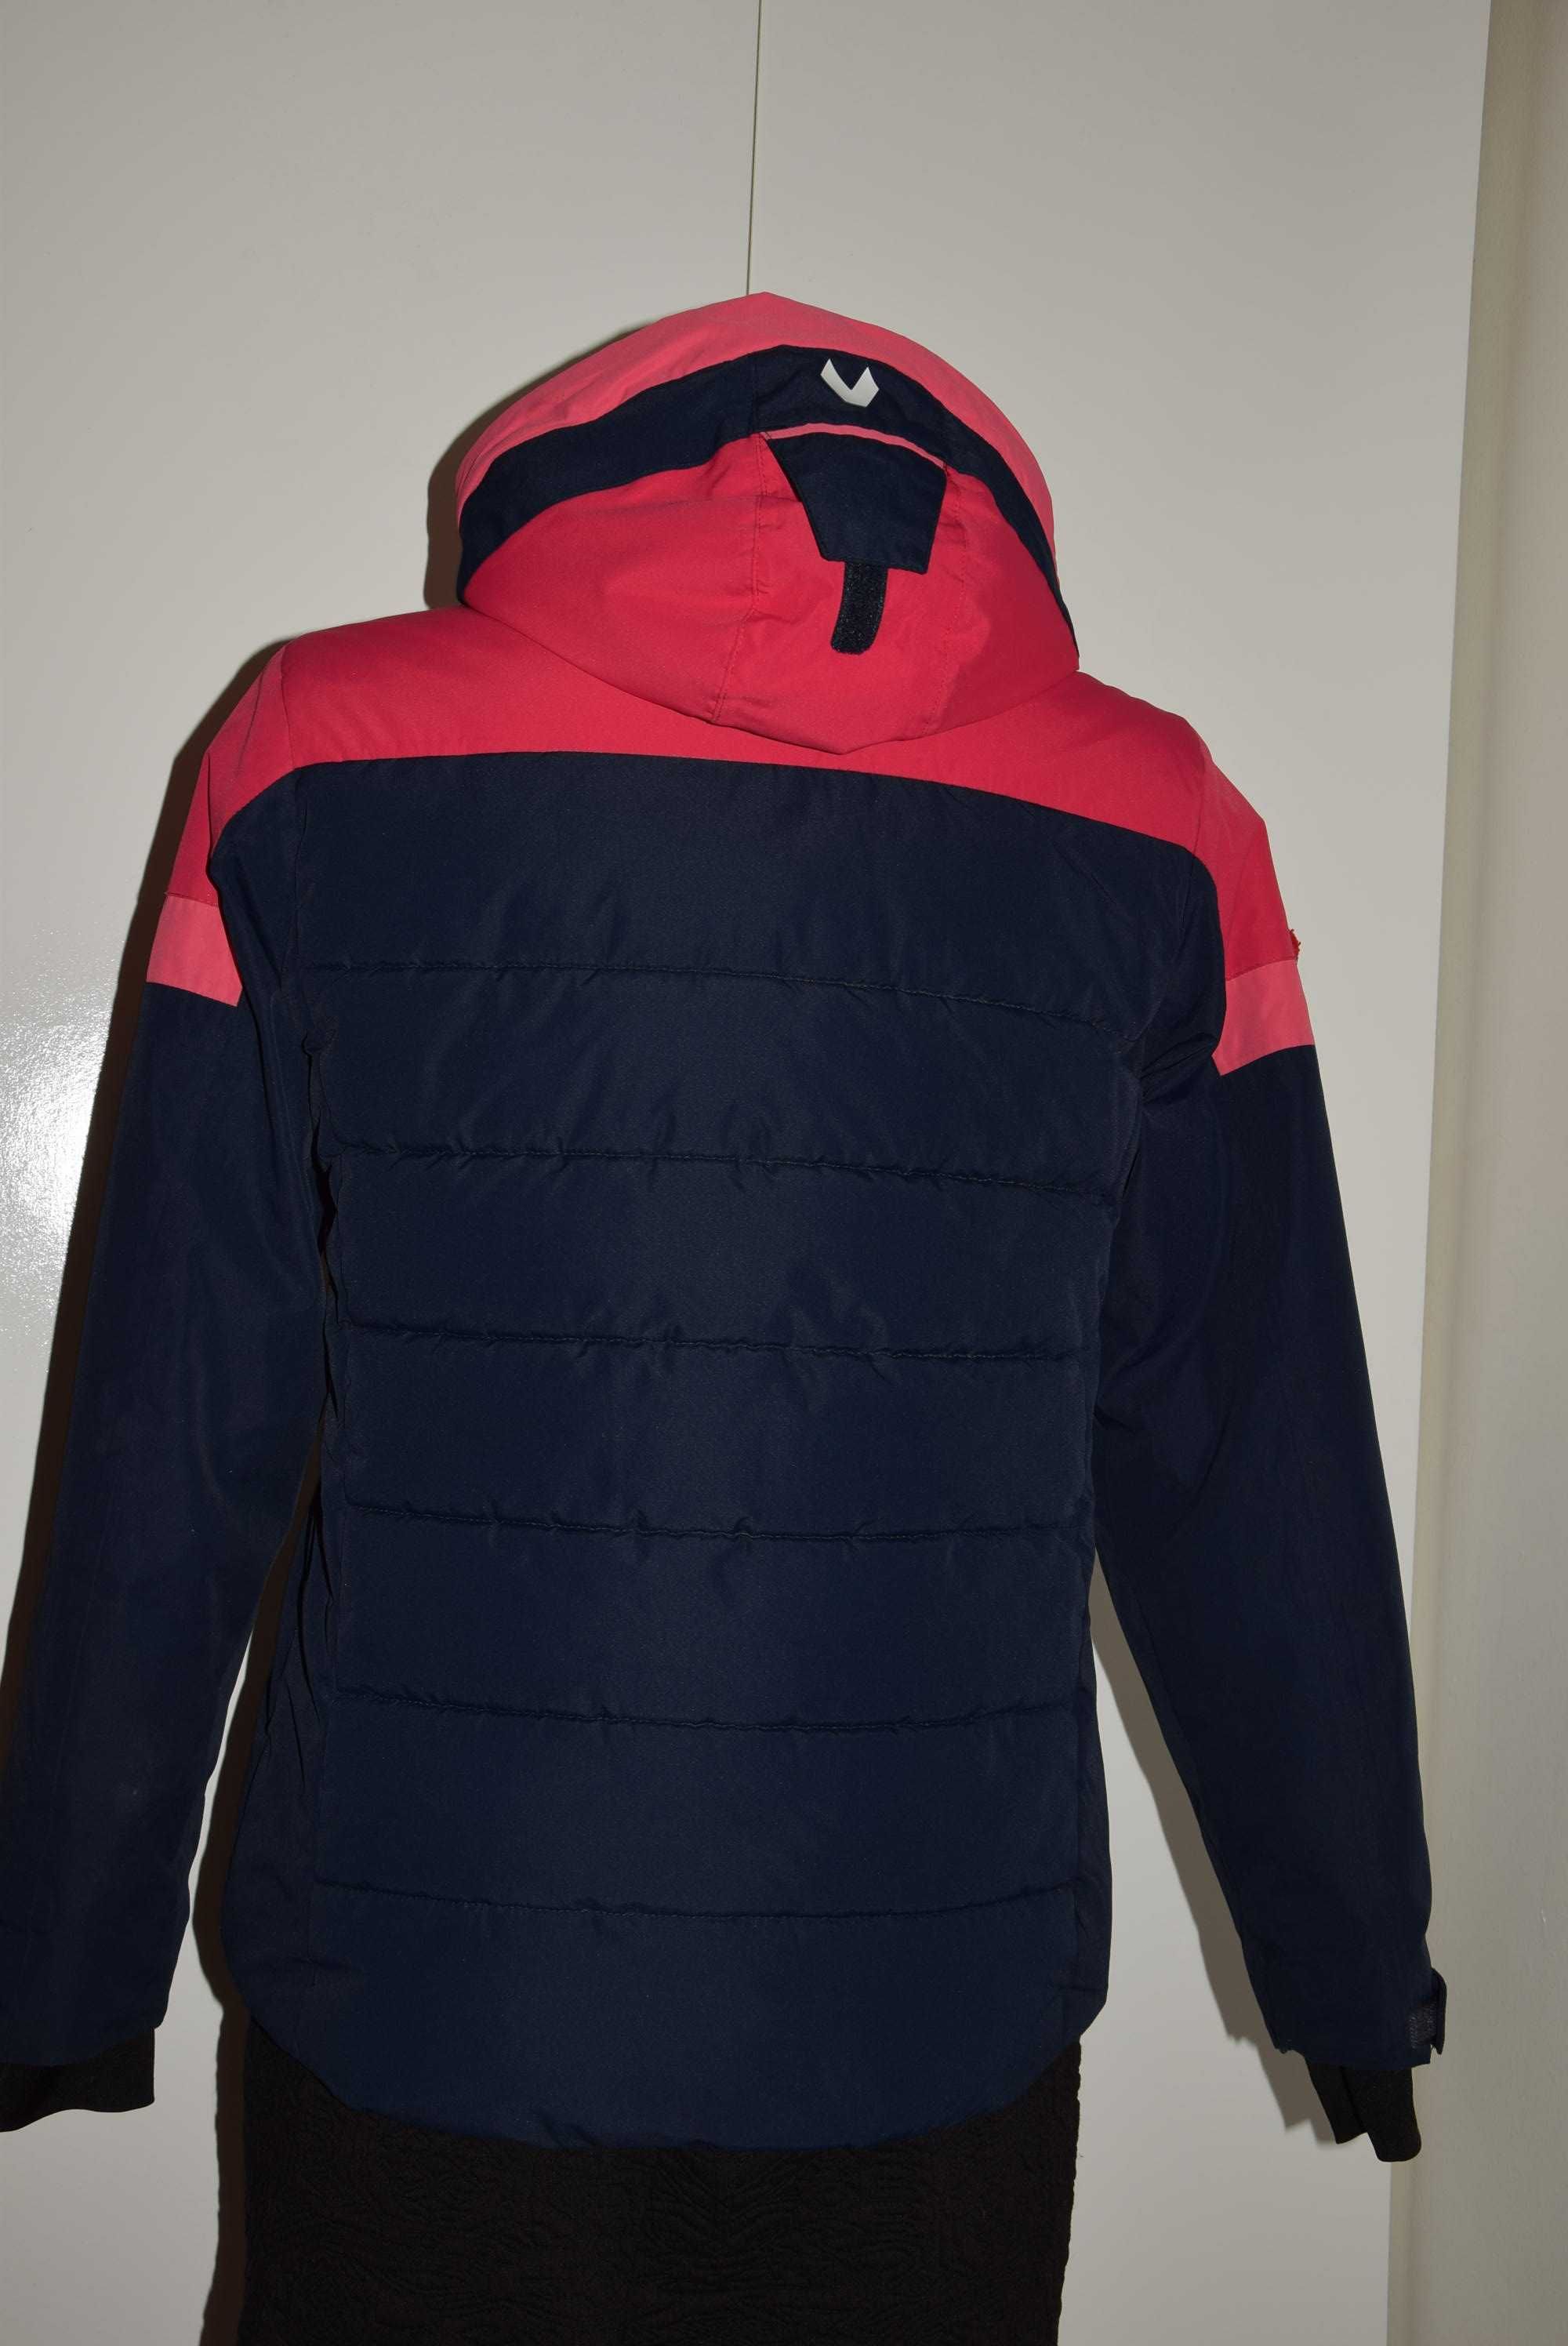 Vertical sport outerwear, ciepła kurtka na narty, sanki 152-158